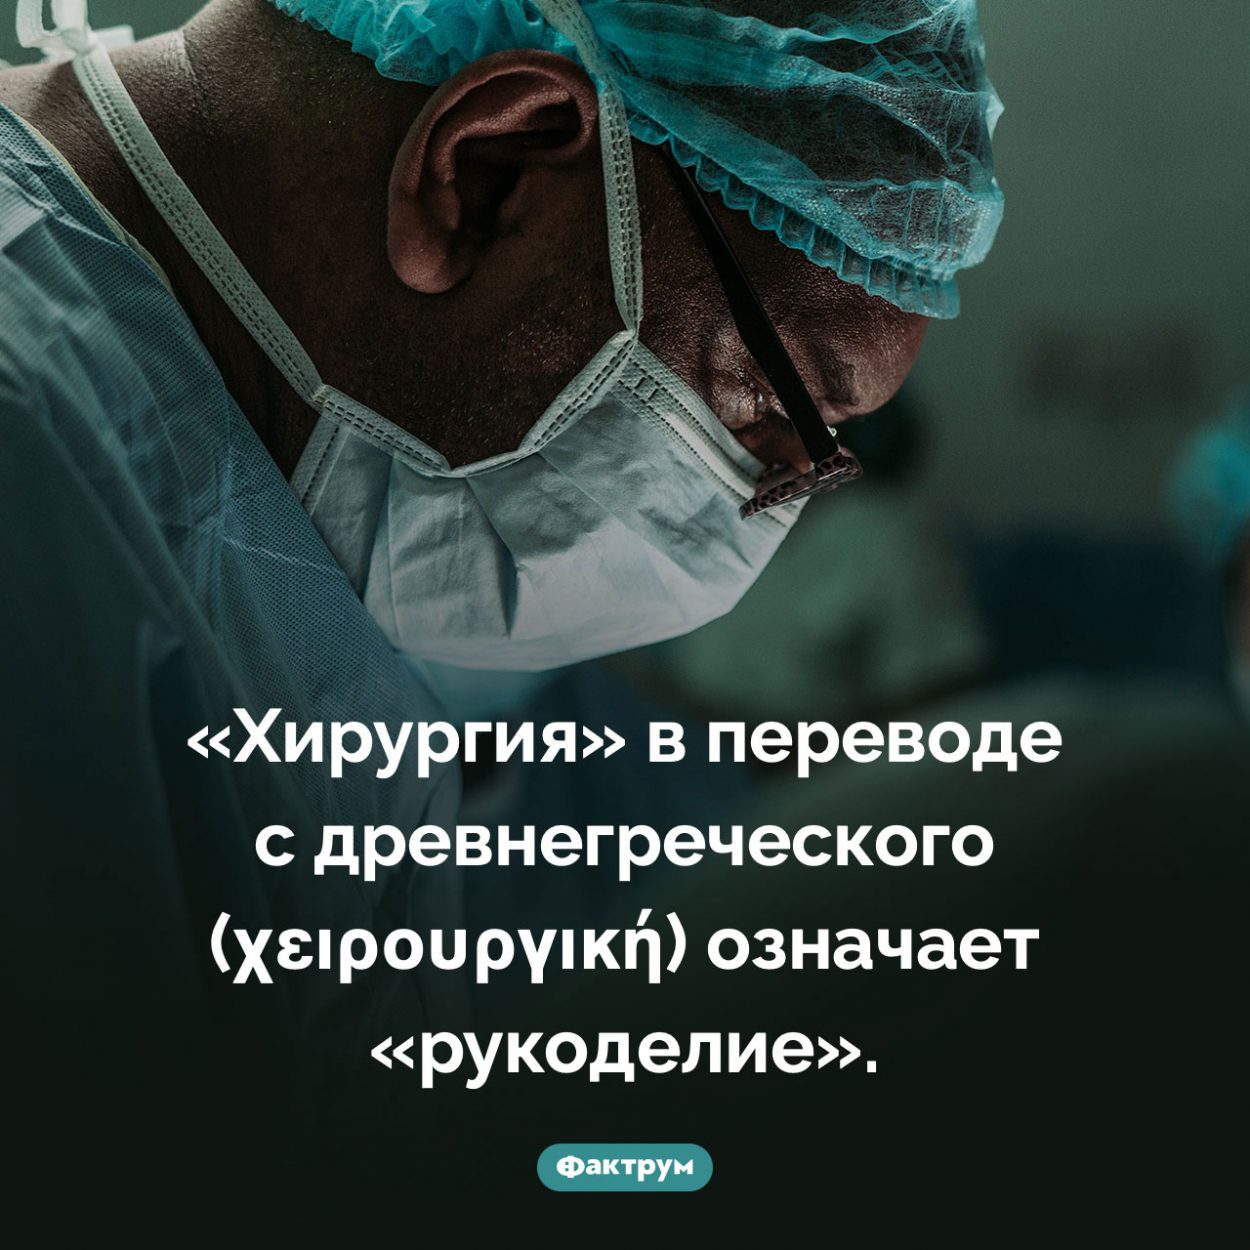 Как переводится слово «хирургия». «Хирургия» в переводе с древнегреческого (χειρουργική) означает «рукоделие».